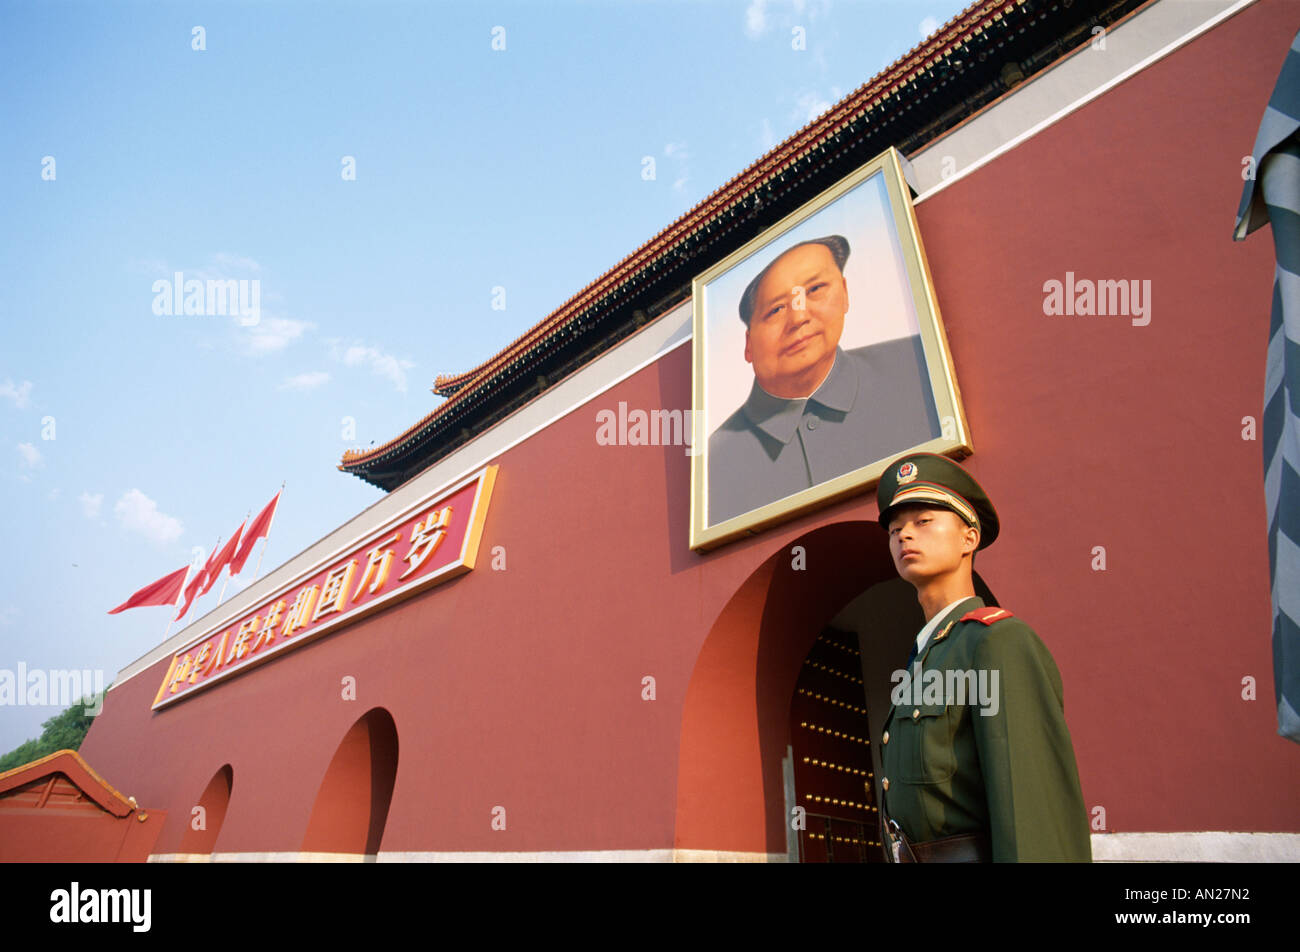 Tiananmen Square / Tiananmen Gate / Guard Standing under Mao Zedong Portrait, Beijing, China Stock Photo